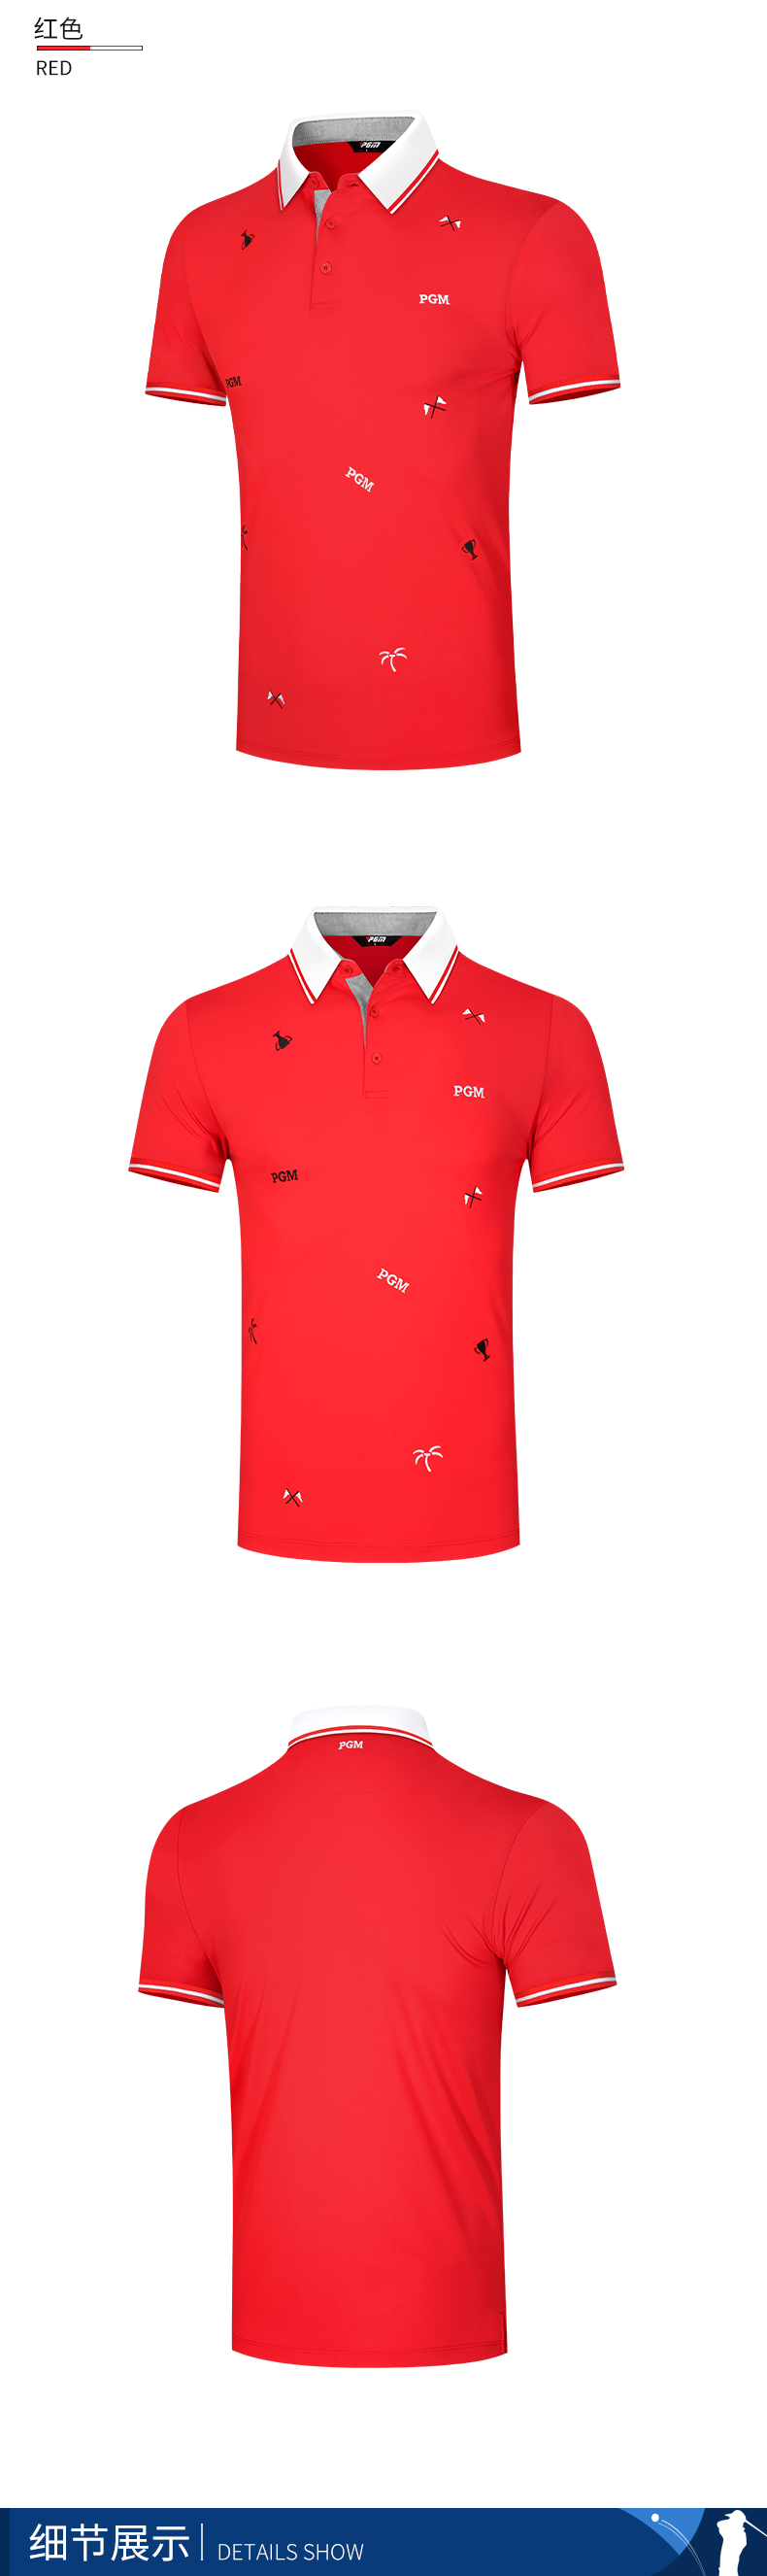 PGM 2021夏季新品 高尔夫服装男士短袖t恤上衣速干面料男装衣服